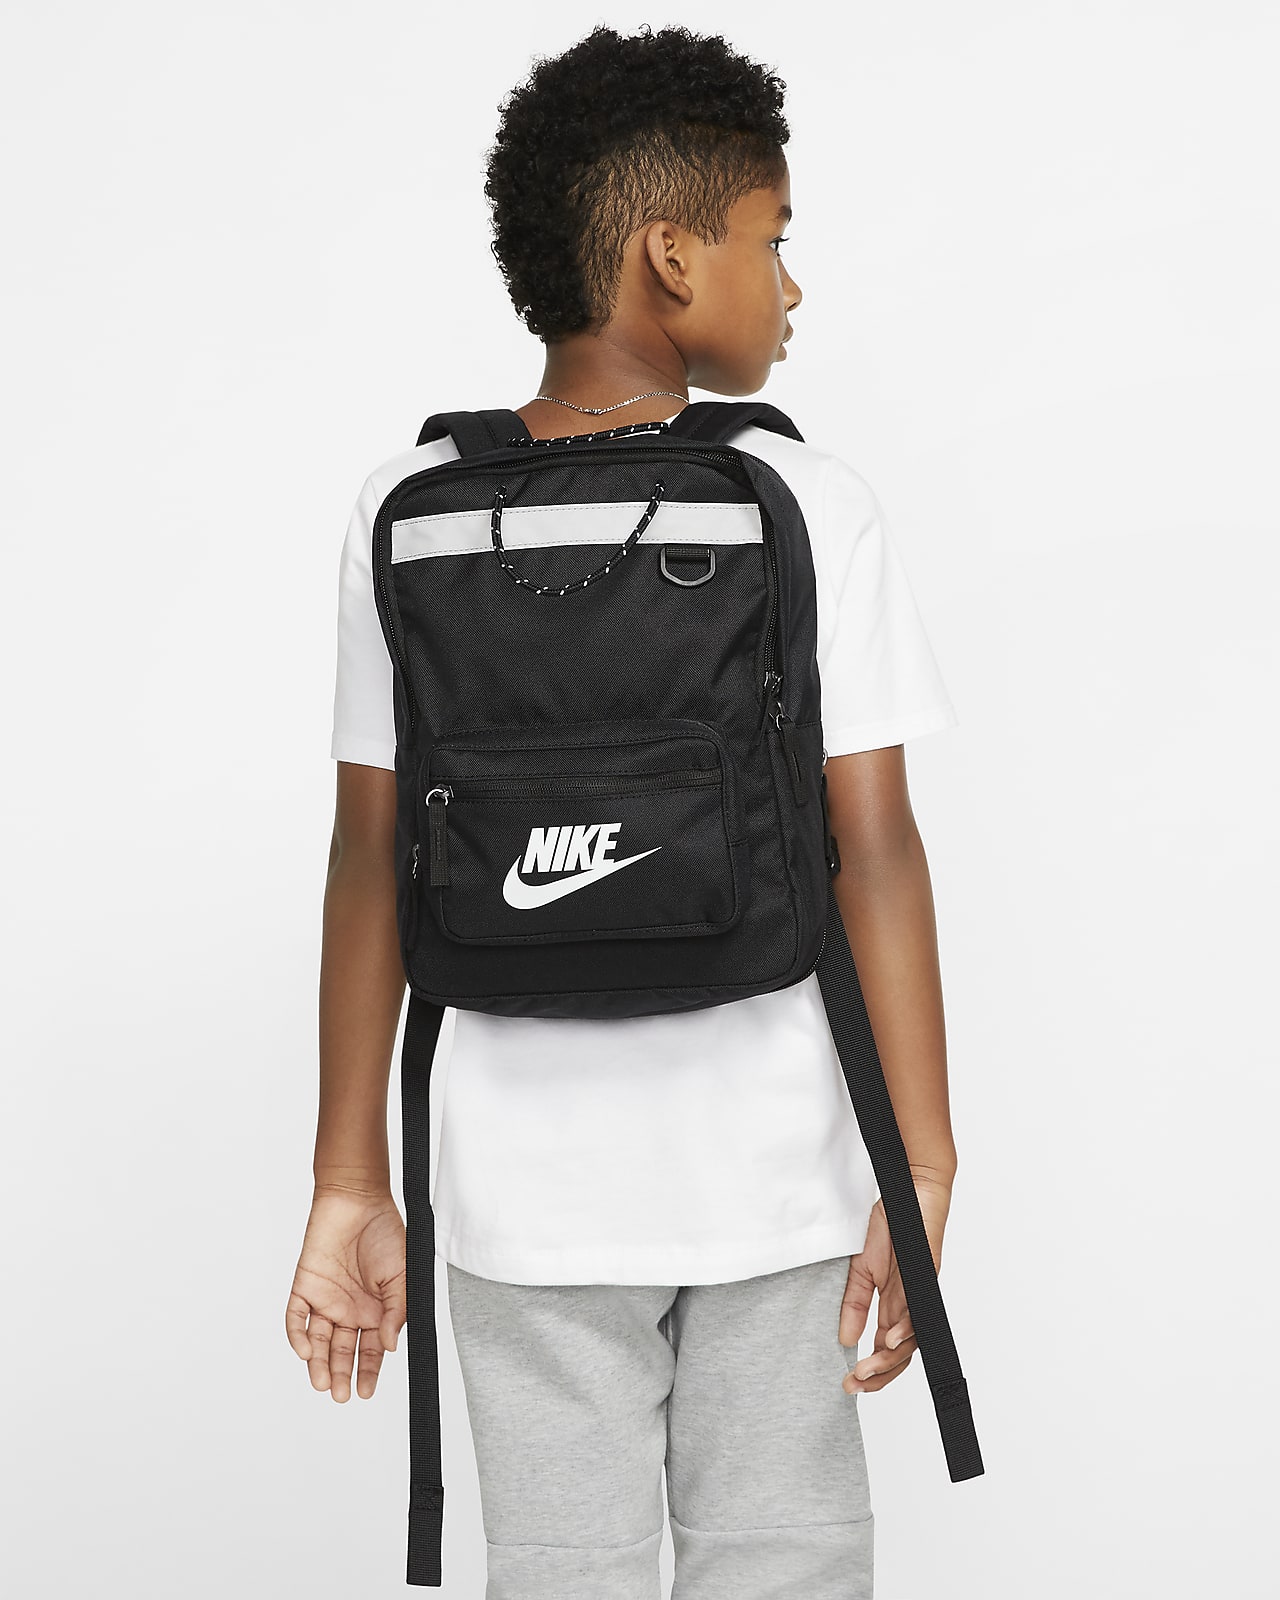 Nike Tanjun Kids Backpack Nike Id